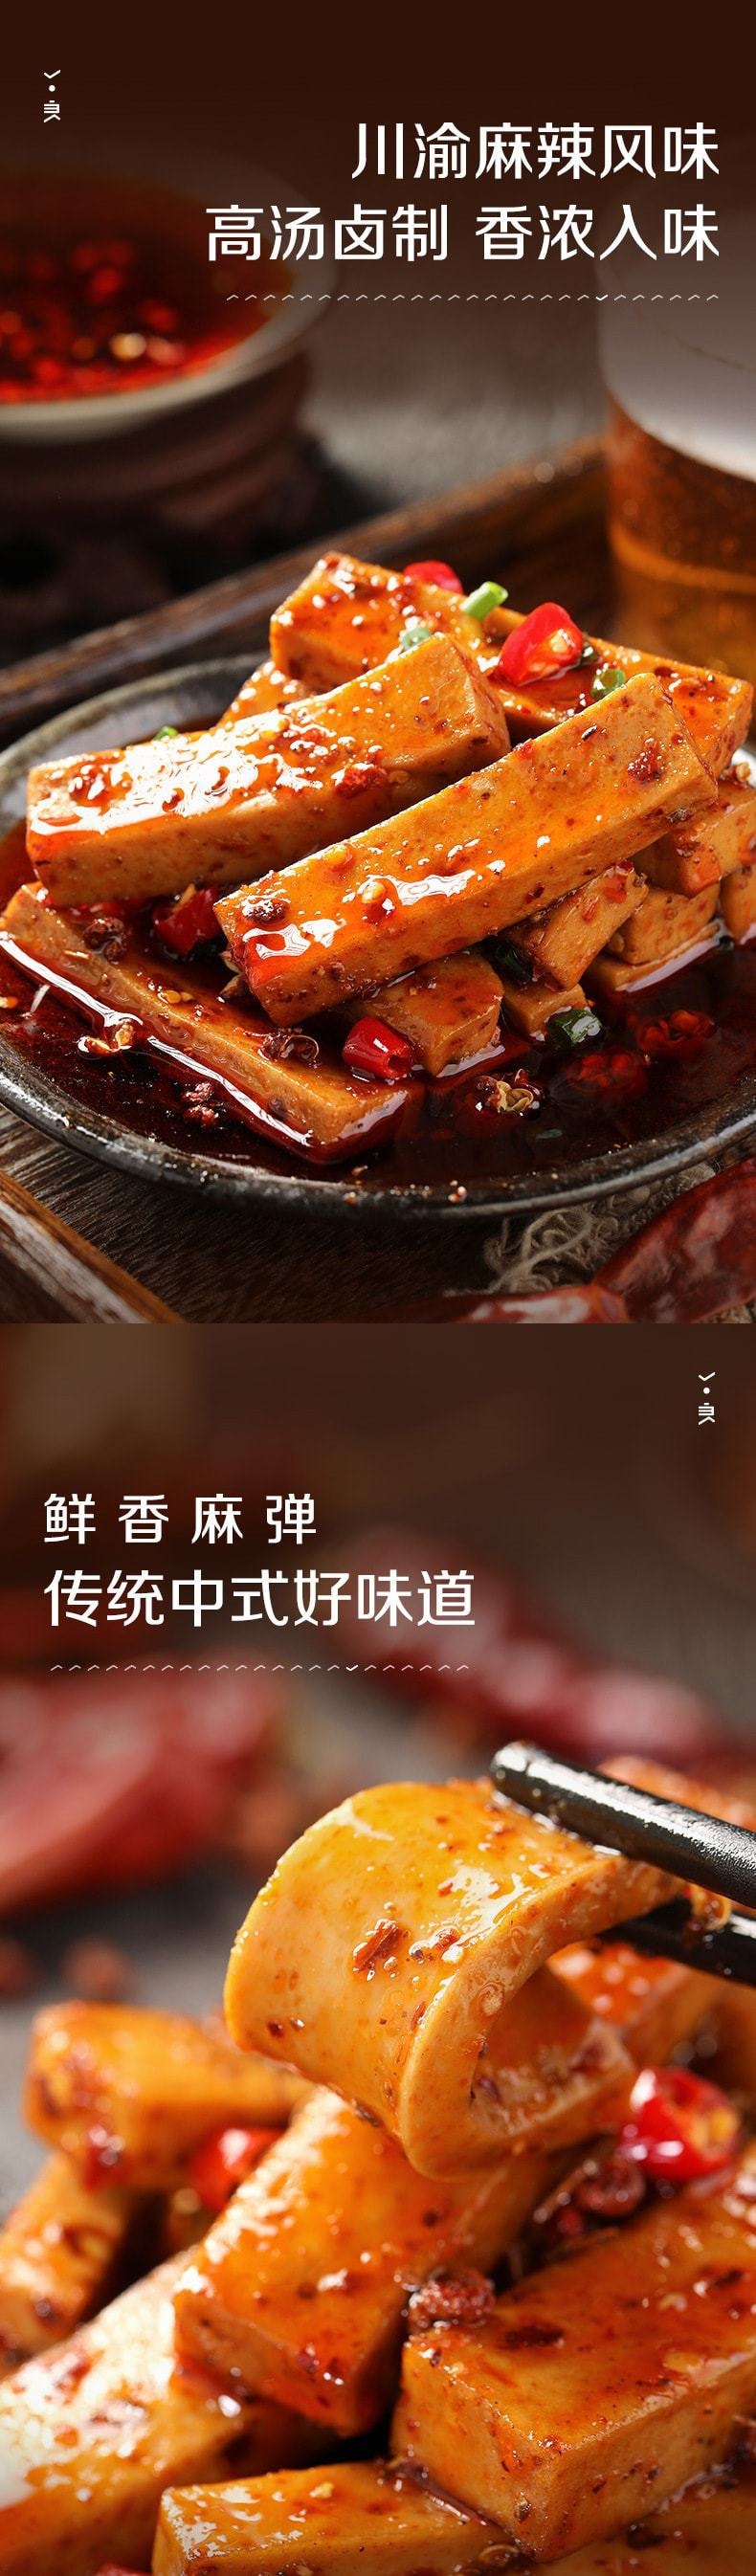 中國 良品鋪子 Q爽豆乾麻辣味 豆乾豆腐乾川渝風味休閒小吃 128g/袋